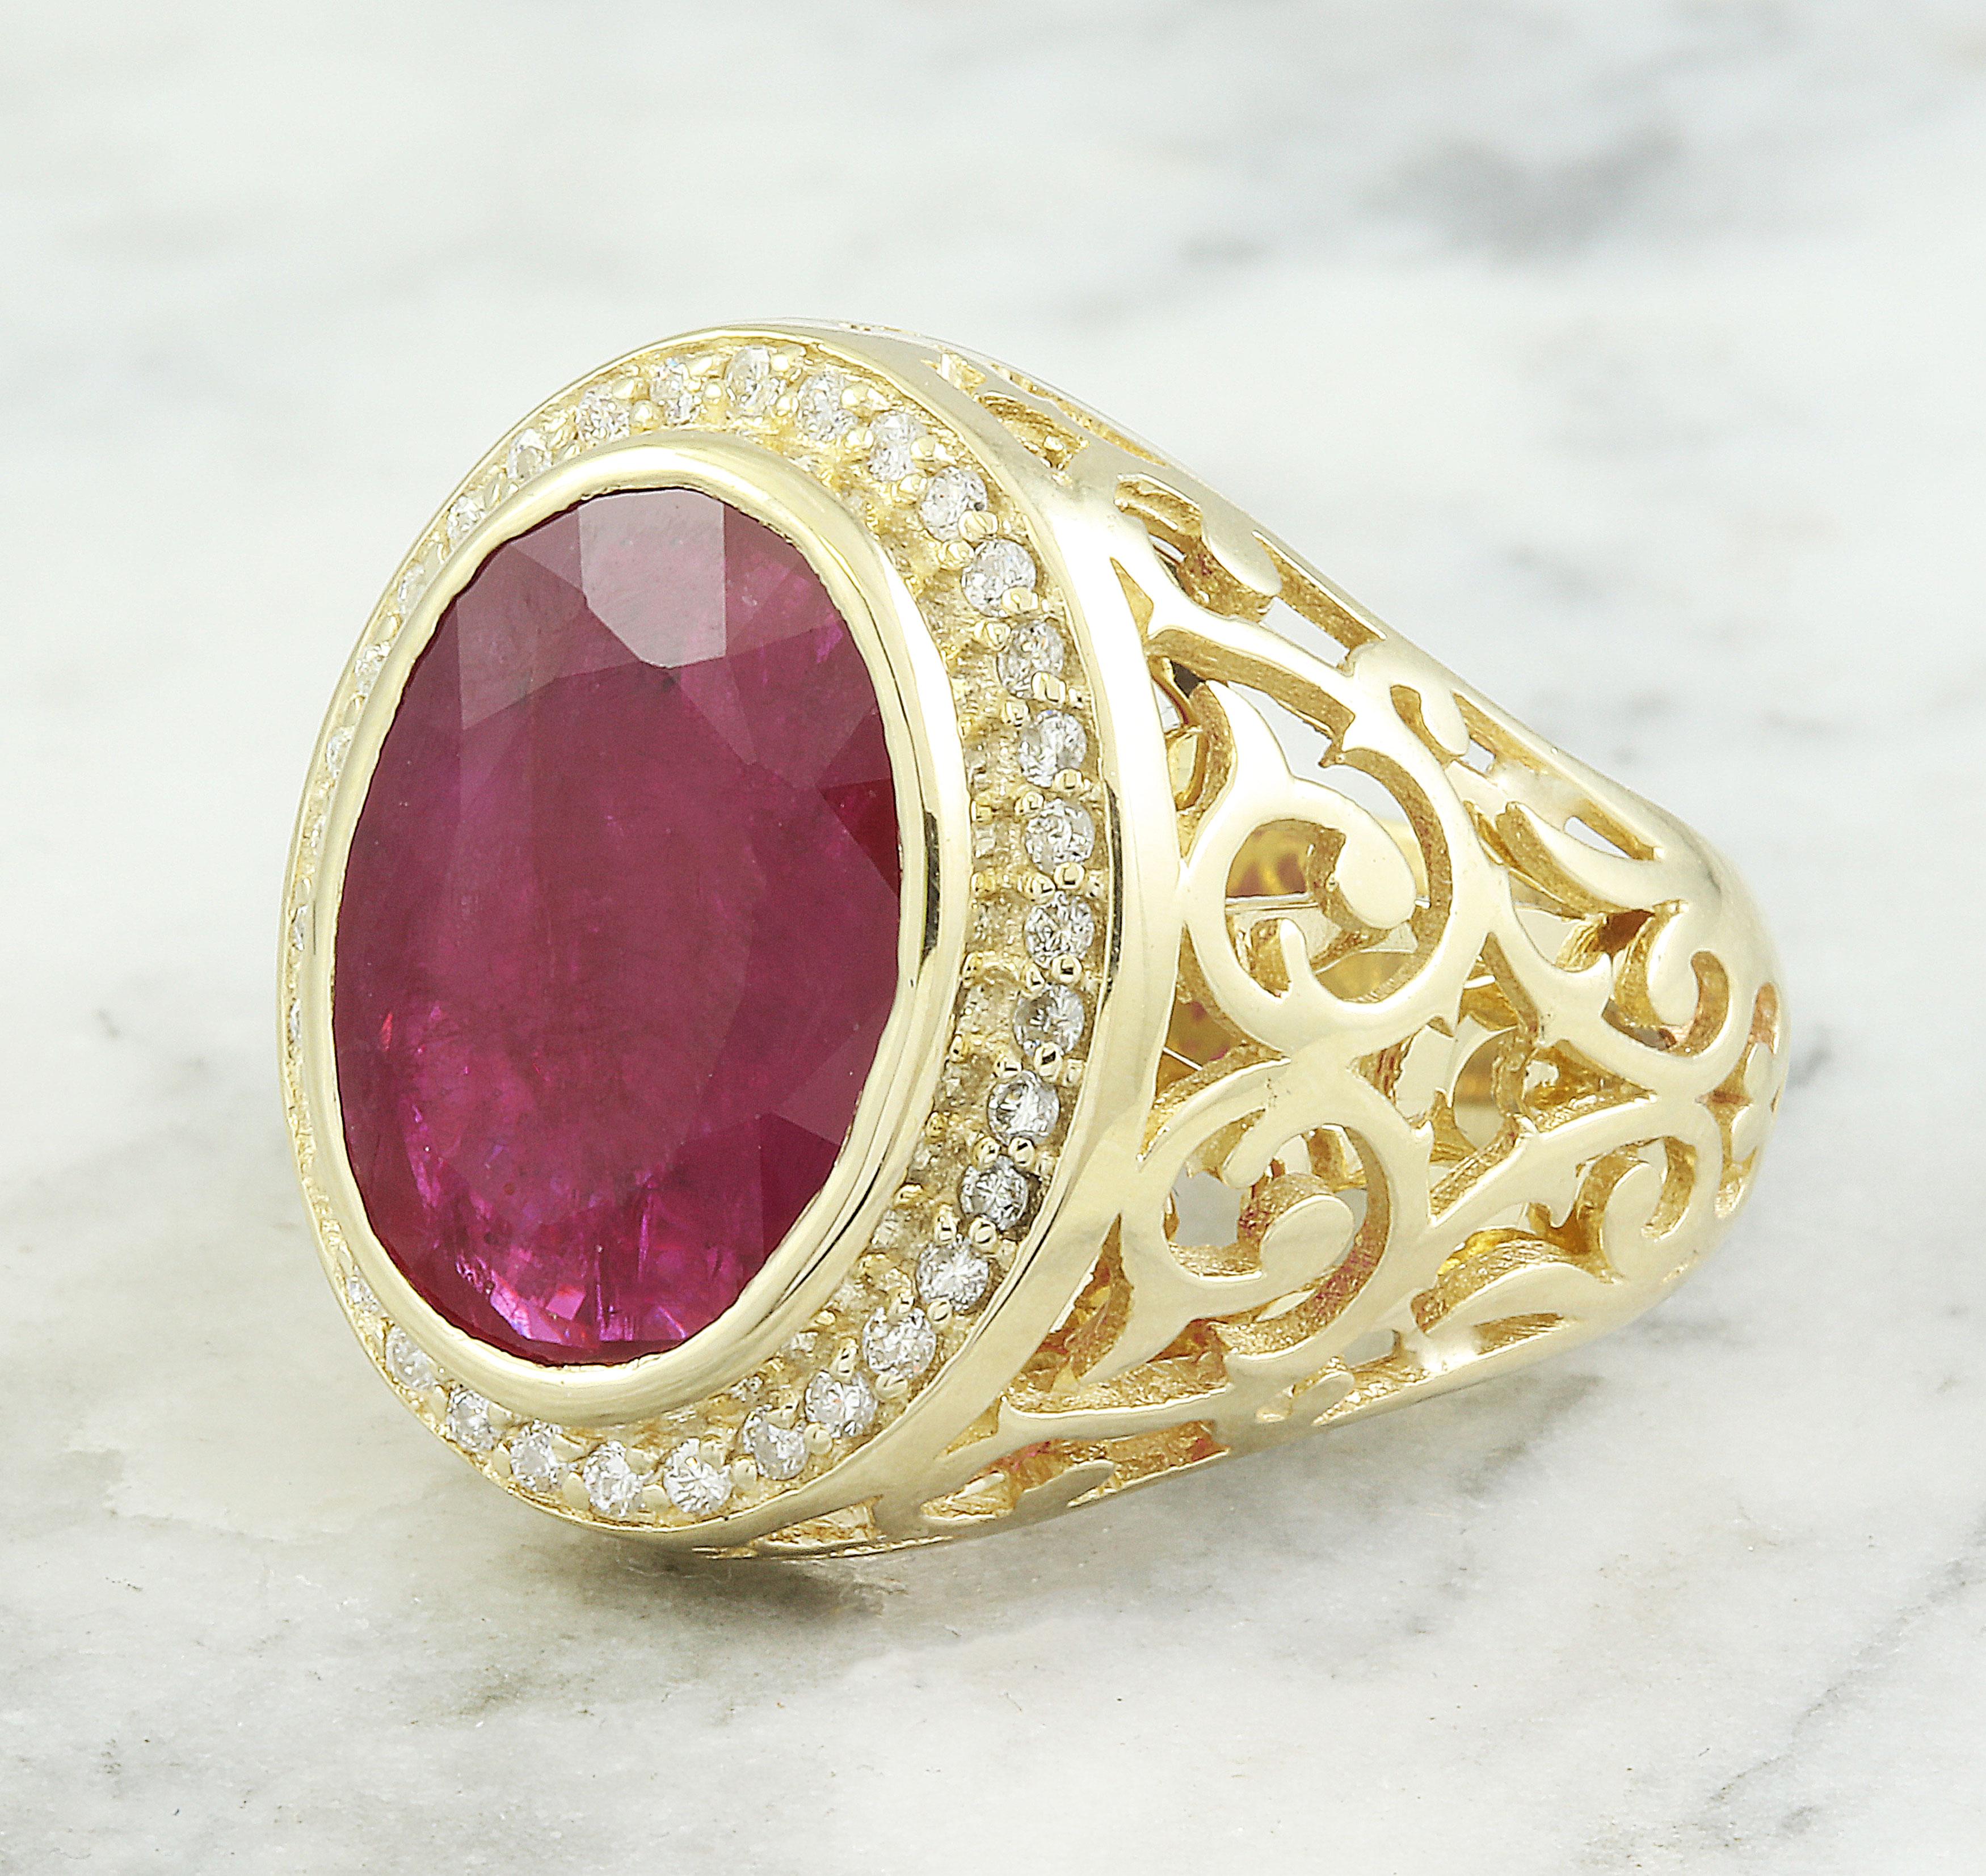 Entdecken Sie Eleganz mit unserem Ring aus massivem 14-karätigem Gelbgold mit einem natürlichen Rubin und Diamanten von 7,78 Karat. Mit einem atemberaubenden Rubin von 7,43 Karat und Diamanten von 0,35 Karat ist dieser Ring ein Statement von